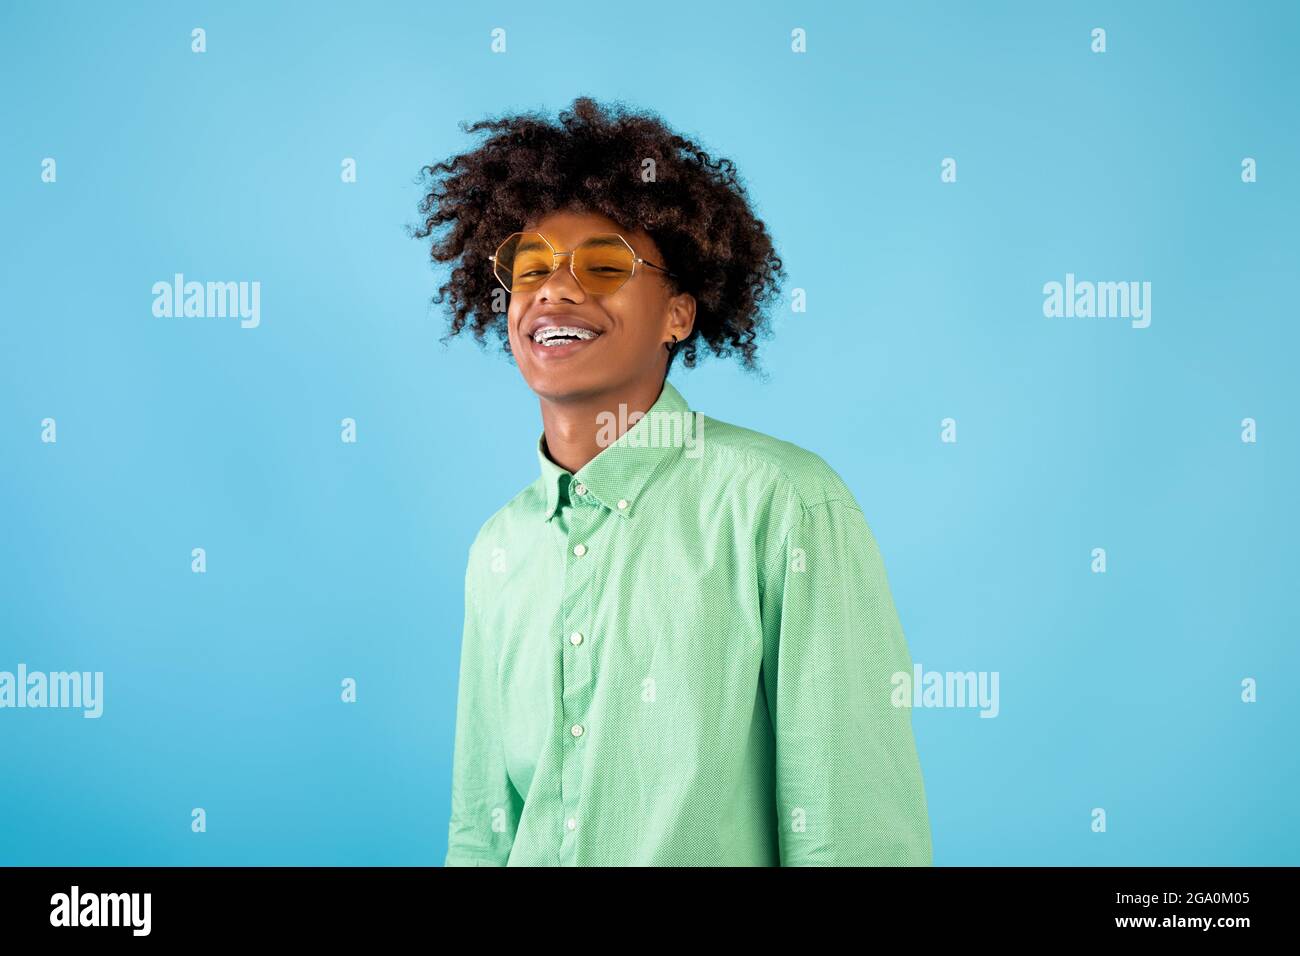 Ritratto di felice ragazzo teenager afroamericano in camicia di menta e occhiali da sole gialli che posano su sfondo blu studio Foto Stock